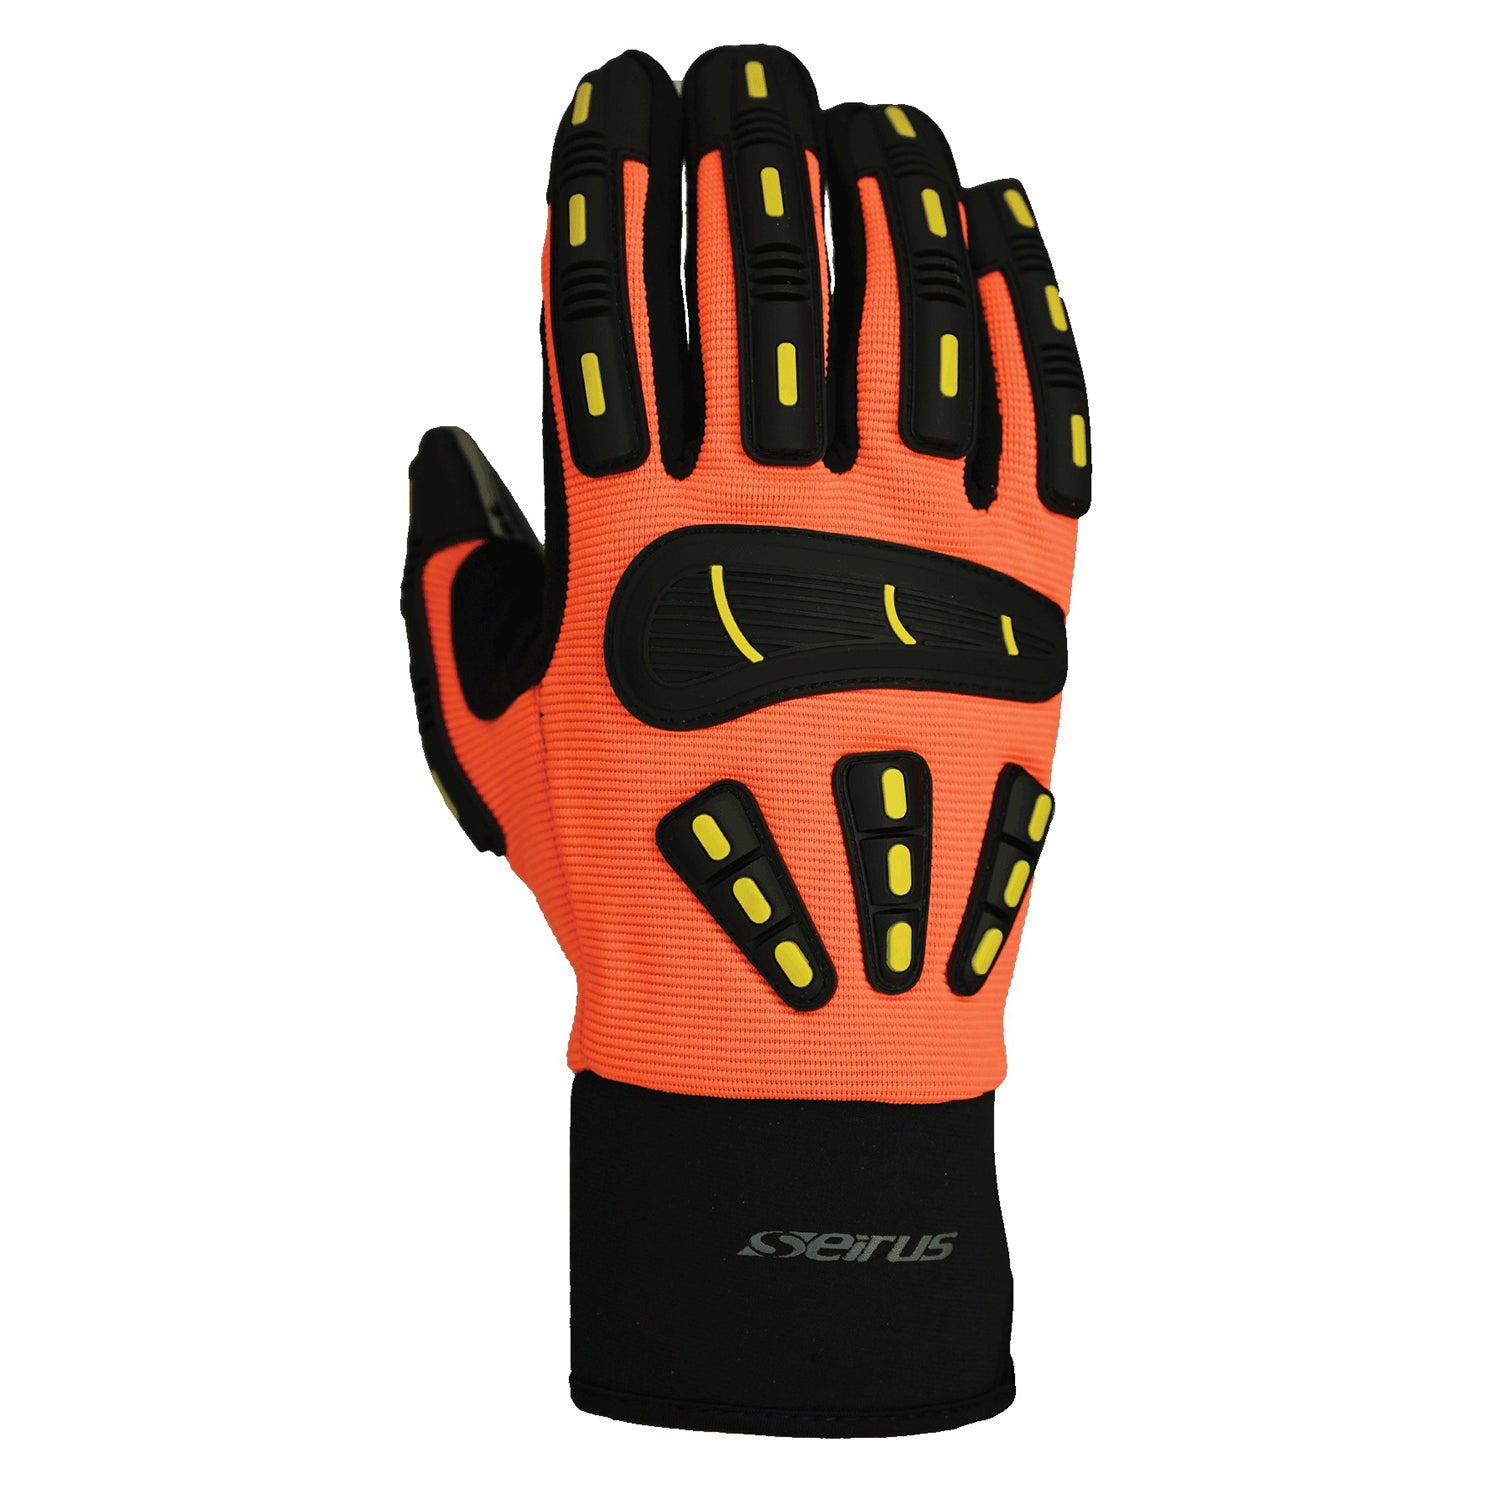 Seirus Workman Gripper Glove 8182 – Good's Store Online